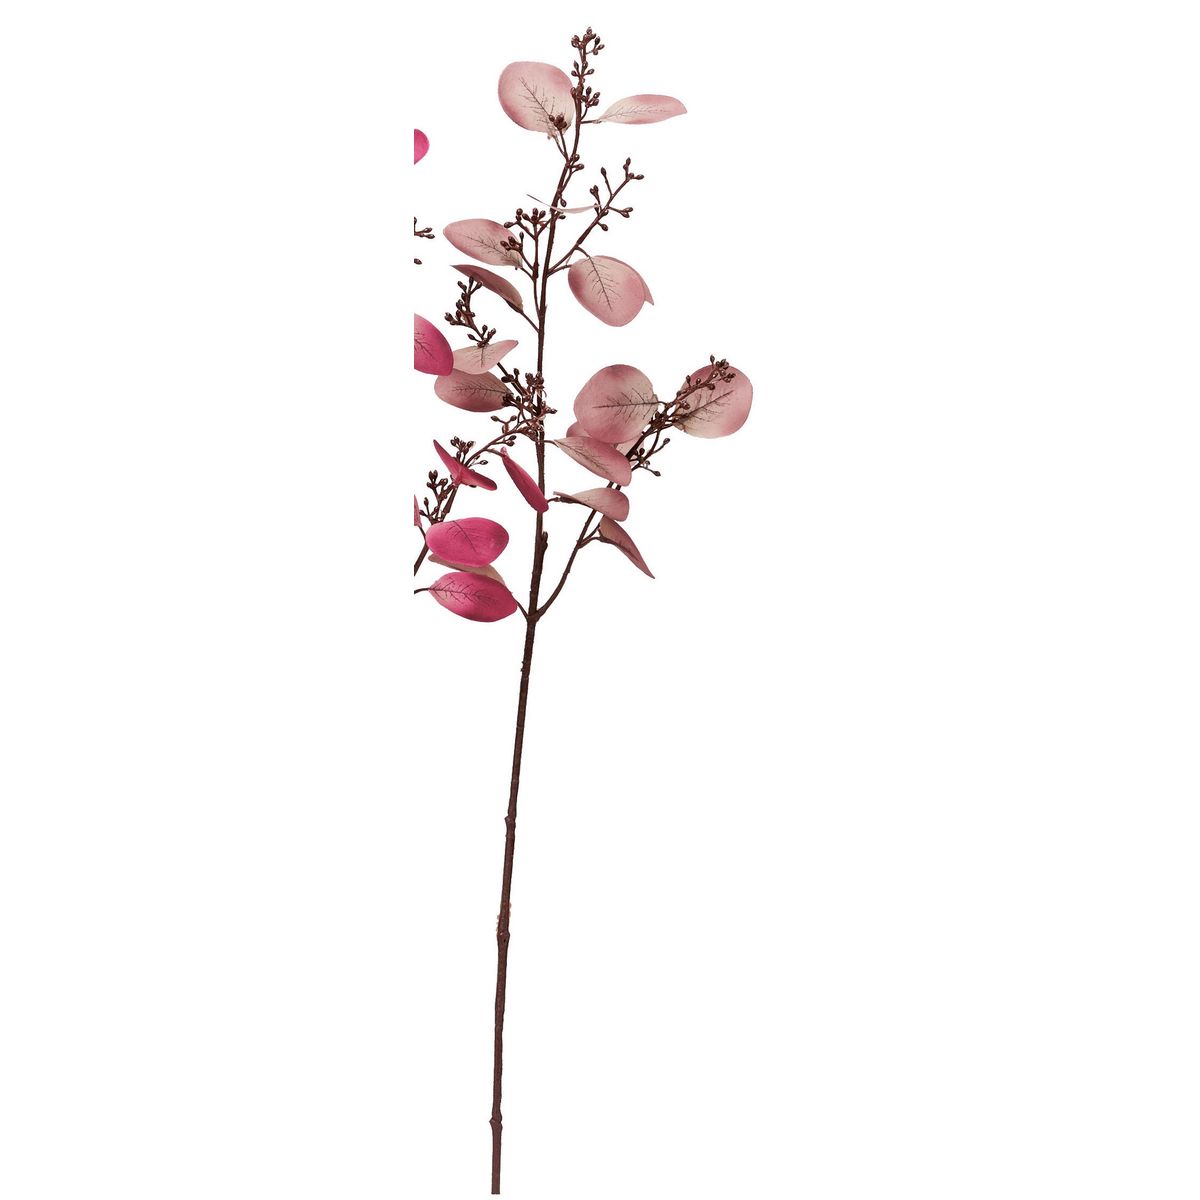 アスカ/ユーカリシードスプレー #055 モーブ/A-44289-55 造花（アーティフィシャルフラワー） 造花葉物、フェイクグリーン ユーカリ